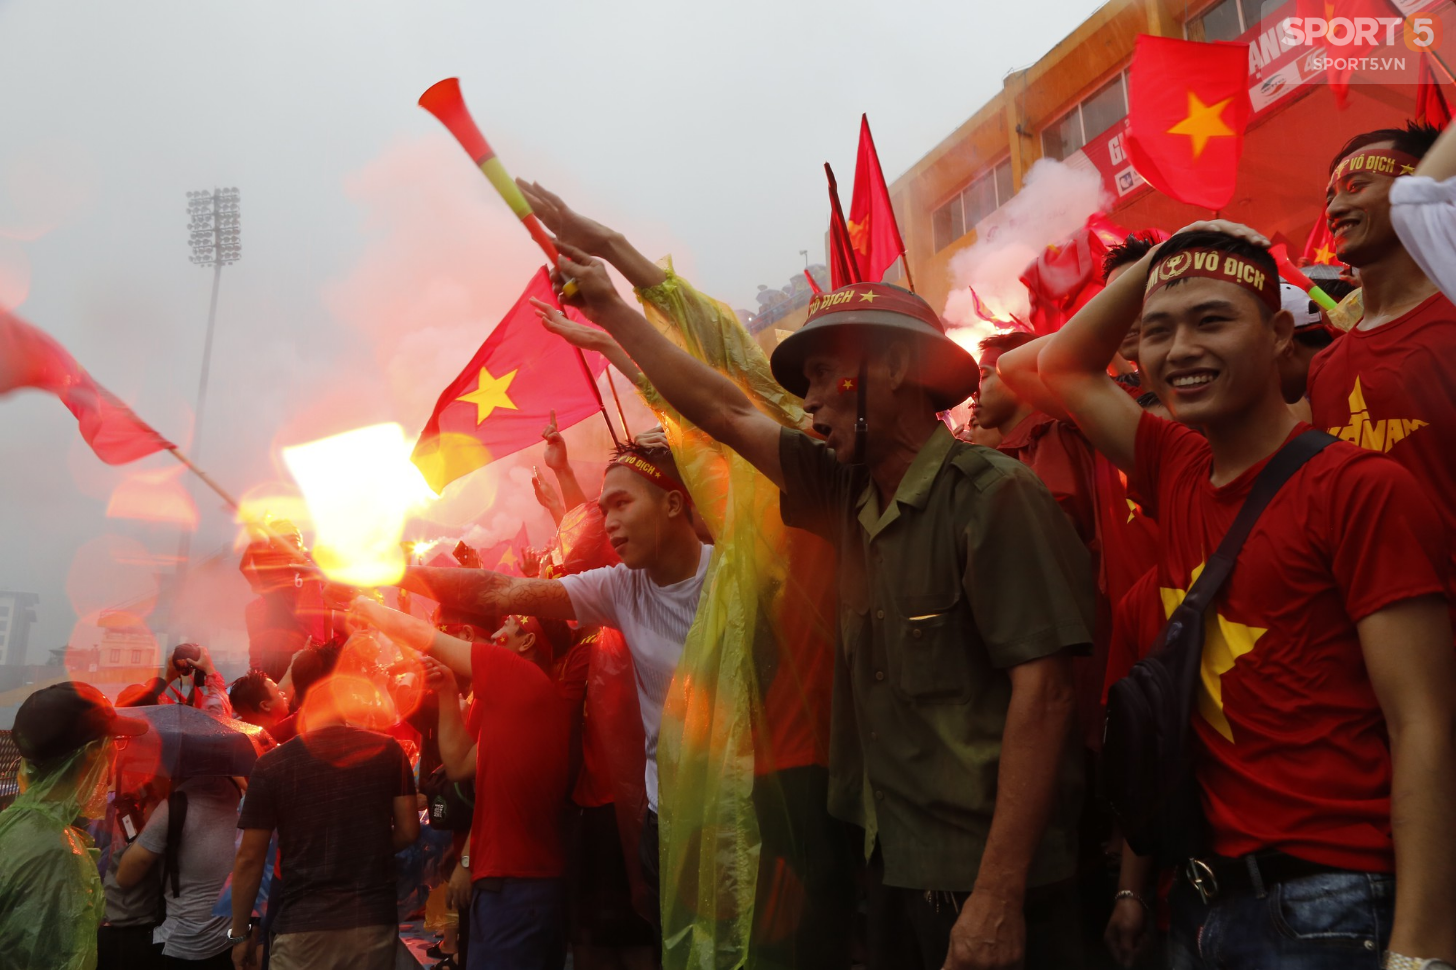 Mặc kệ thắng thua, mưa gió, người hâm mộ vẫn cháy hết mình vì một Olympic Việt Nam bất khuất - Ảnh 9.